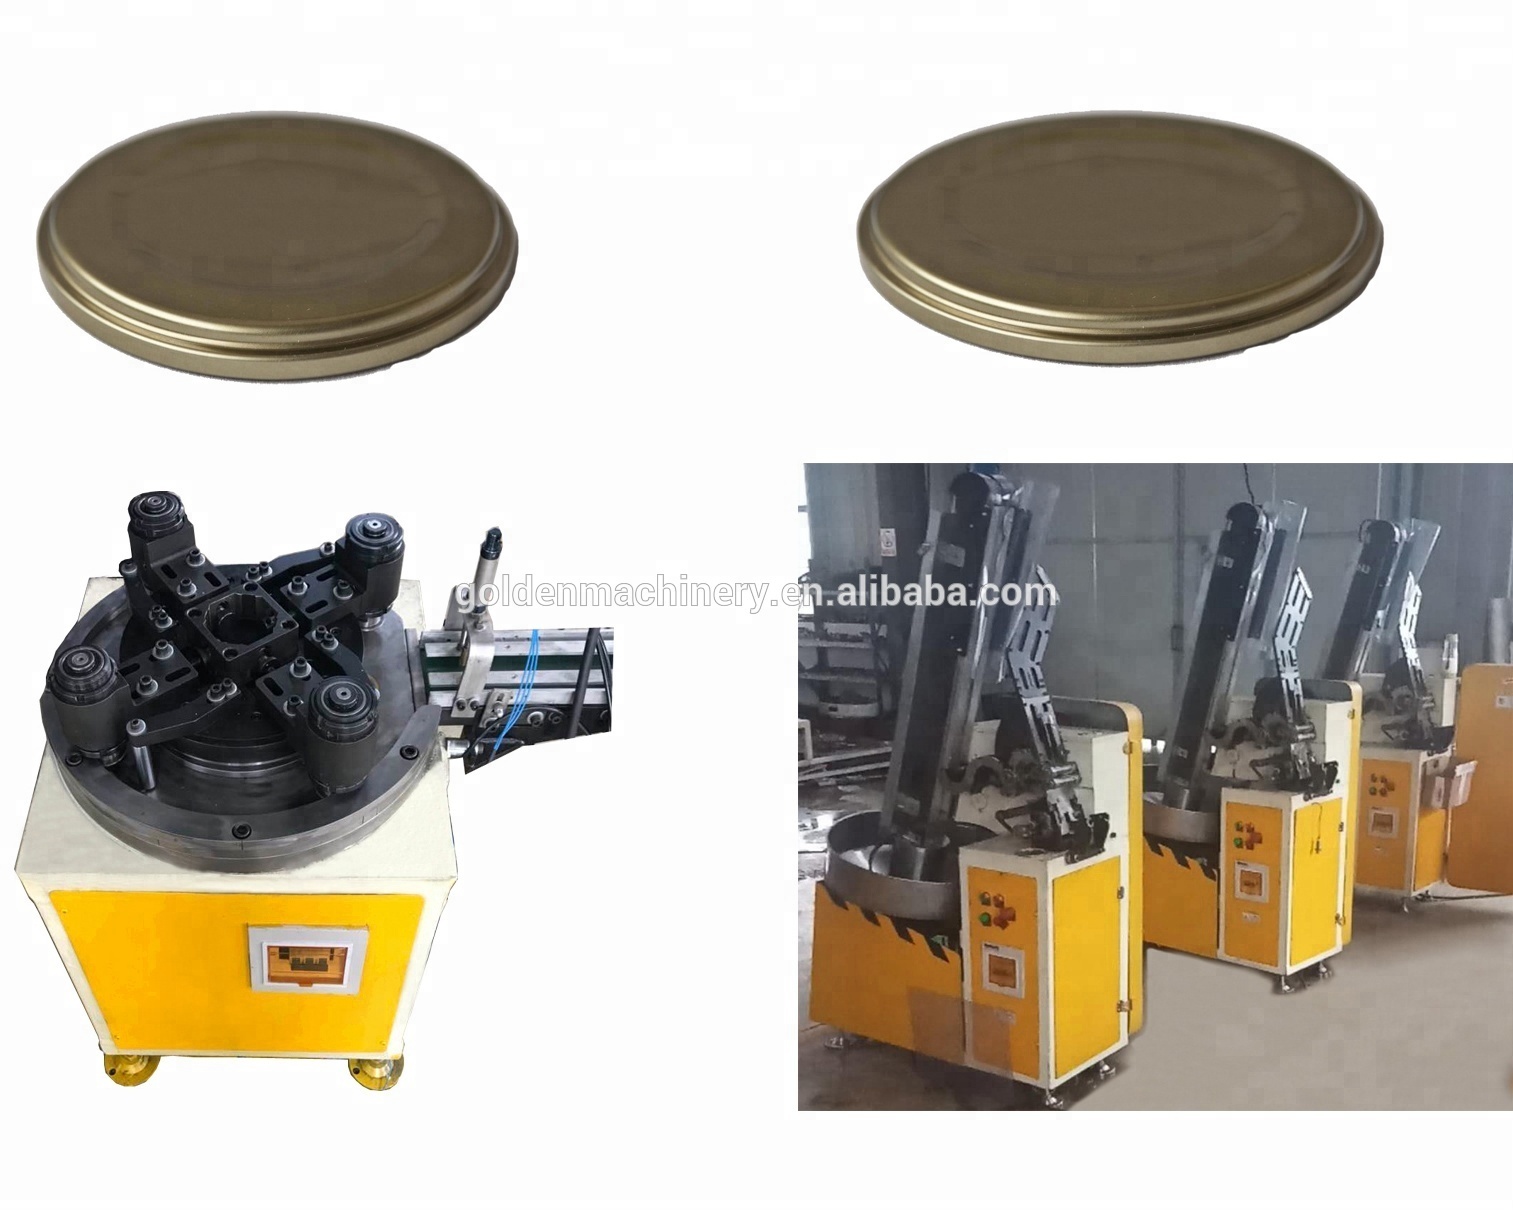 Troqueles de perforación de metal con alimentación automática de hojas de hojalata CNC / Prensa perforadora para torcer la línea de máquinas de fabricación de tapas CKO SKO